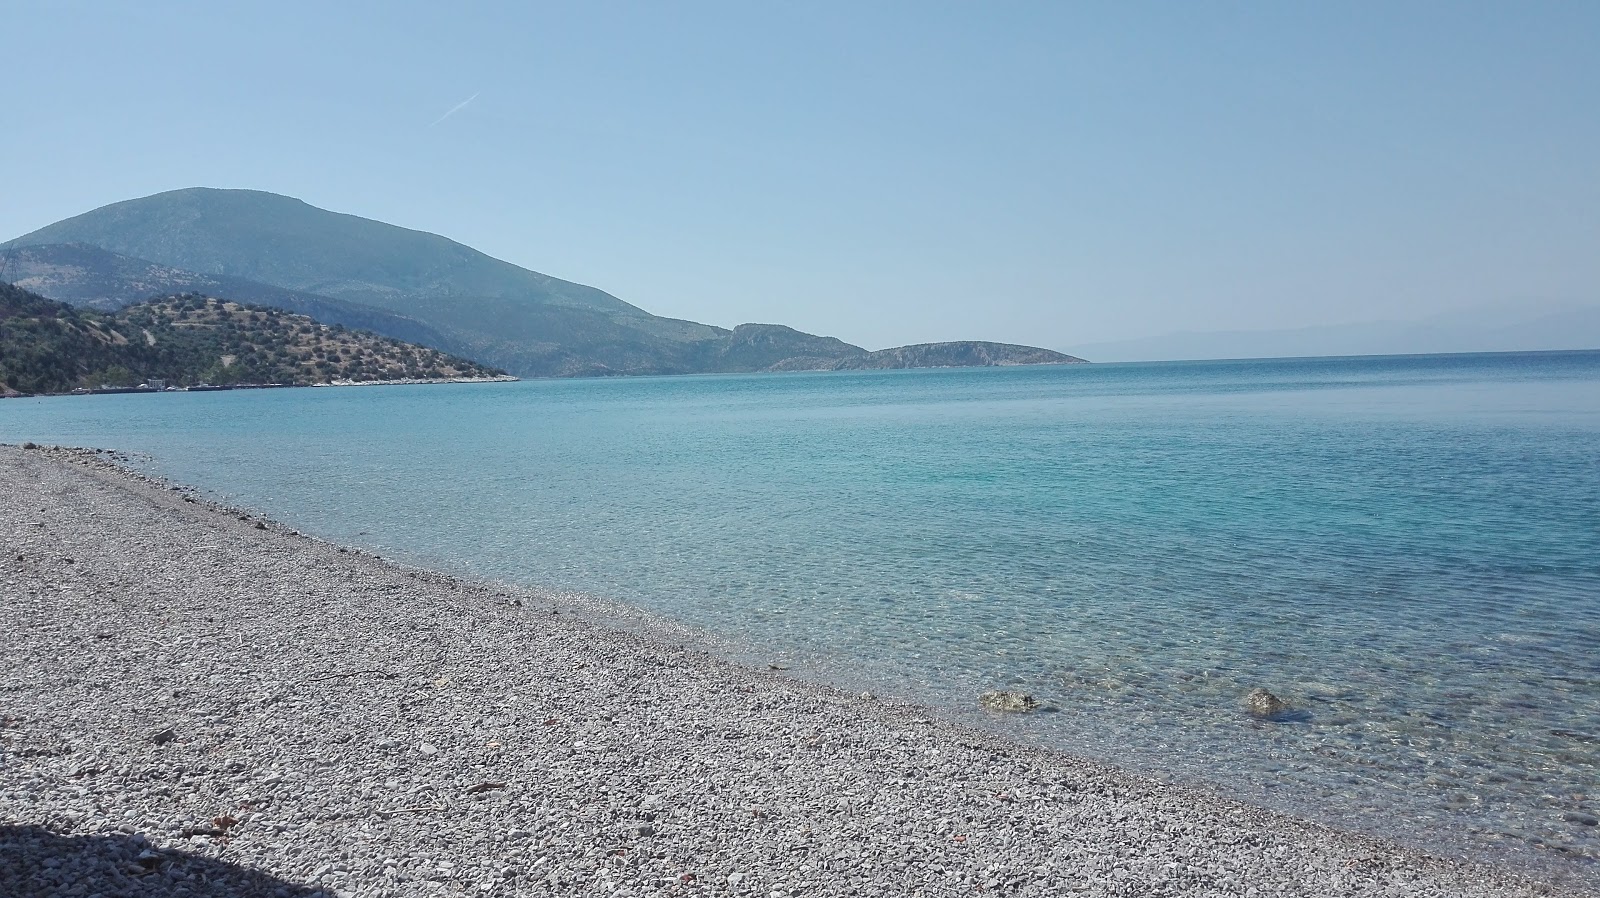 Agios Nikolaos beach'in fotoğrafı hafif ince çakıl taş yüzey ile